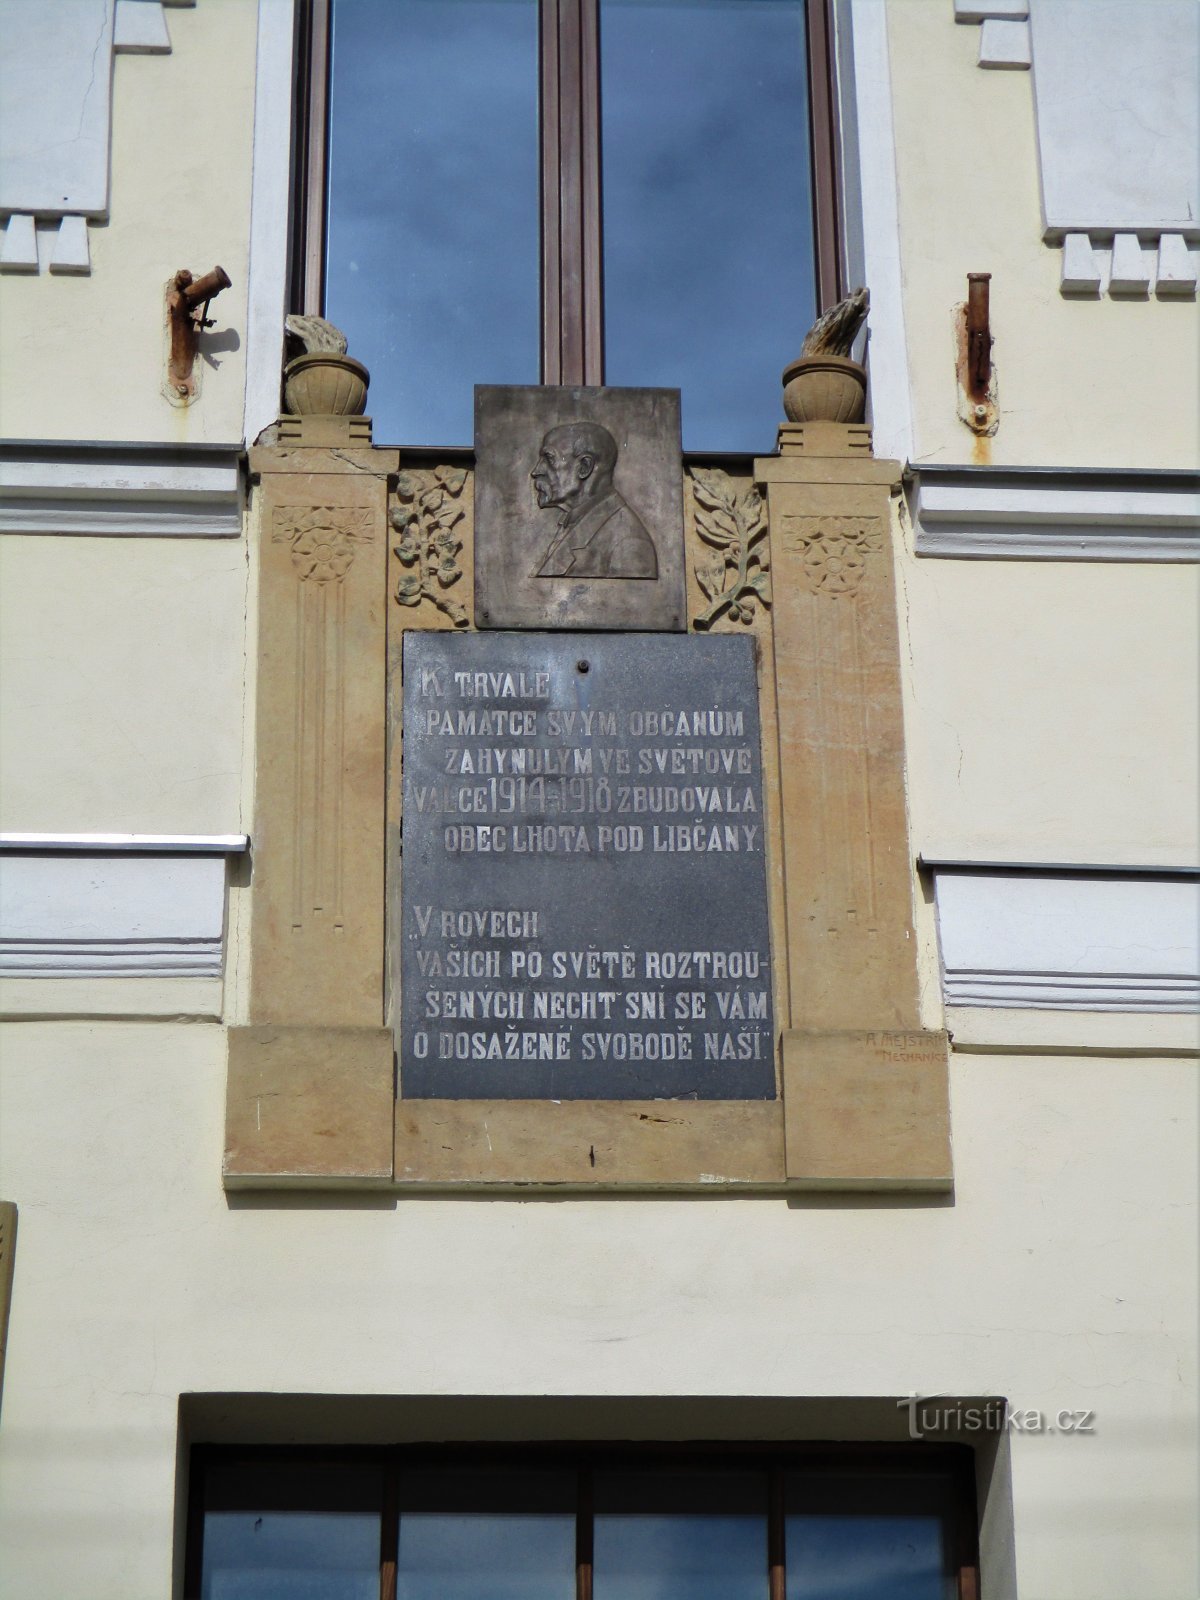 Tấm biển tưởng niệm tại trường (Lhota pod Libčany)